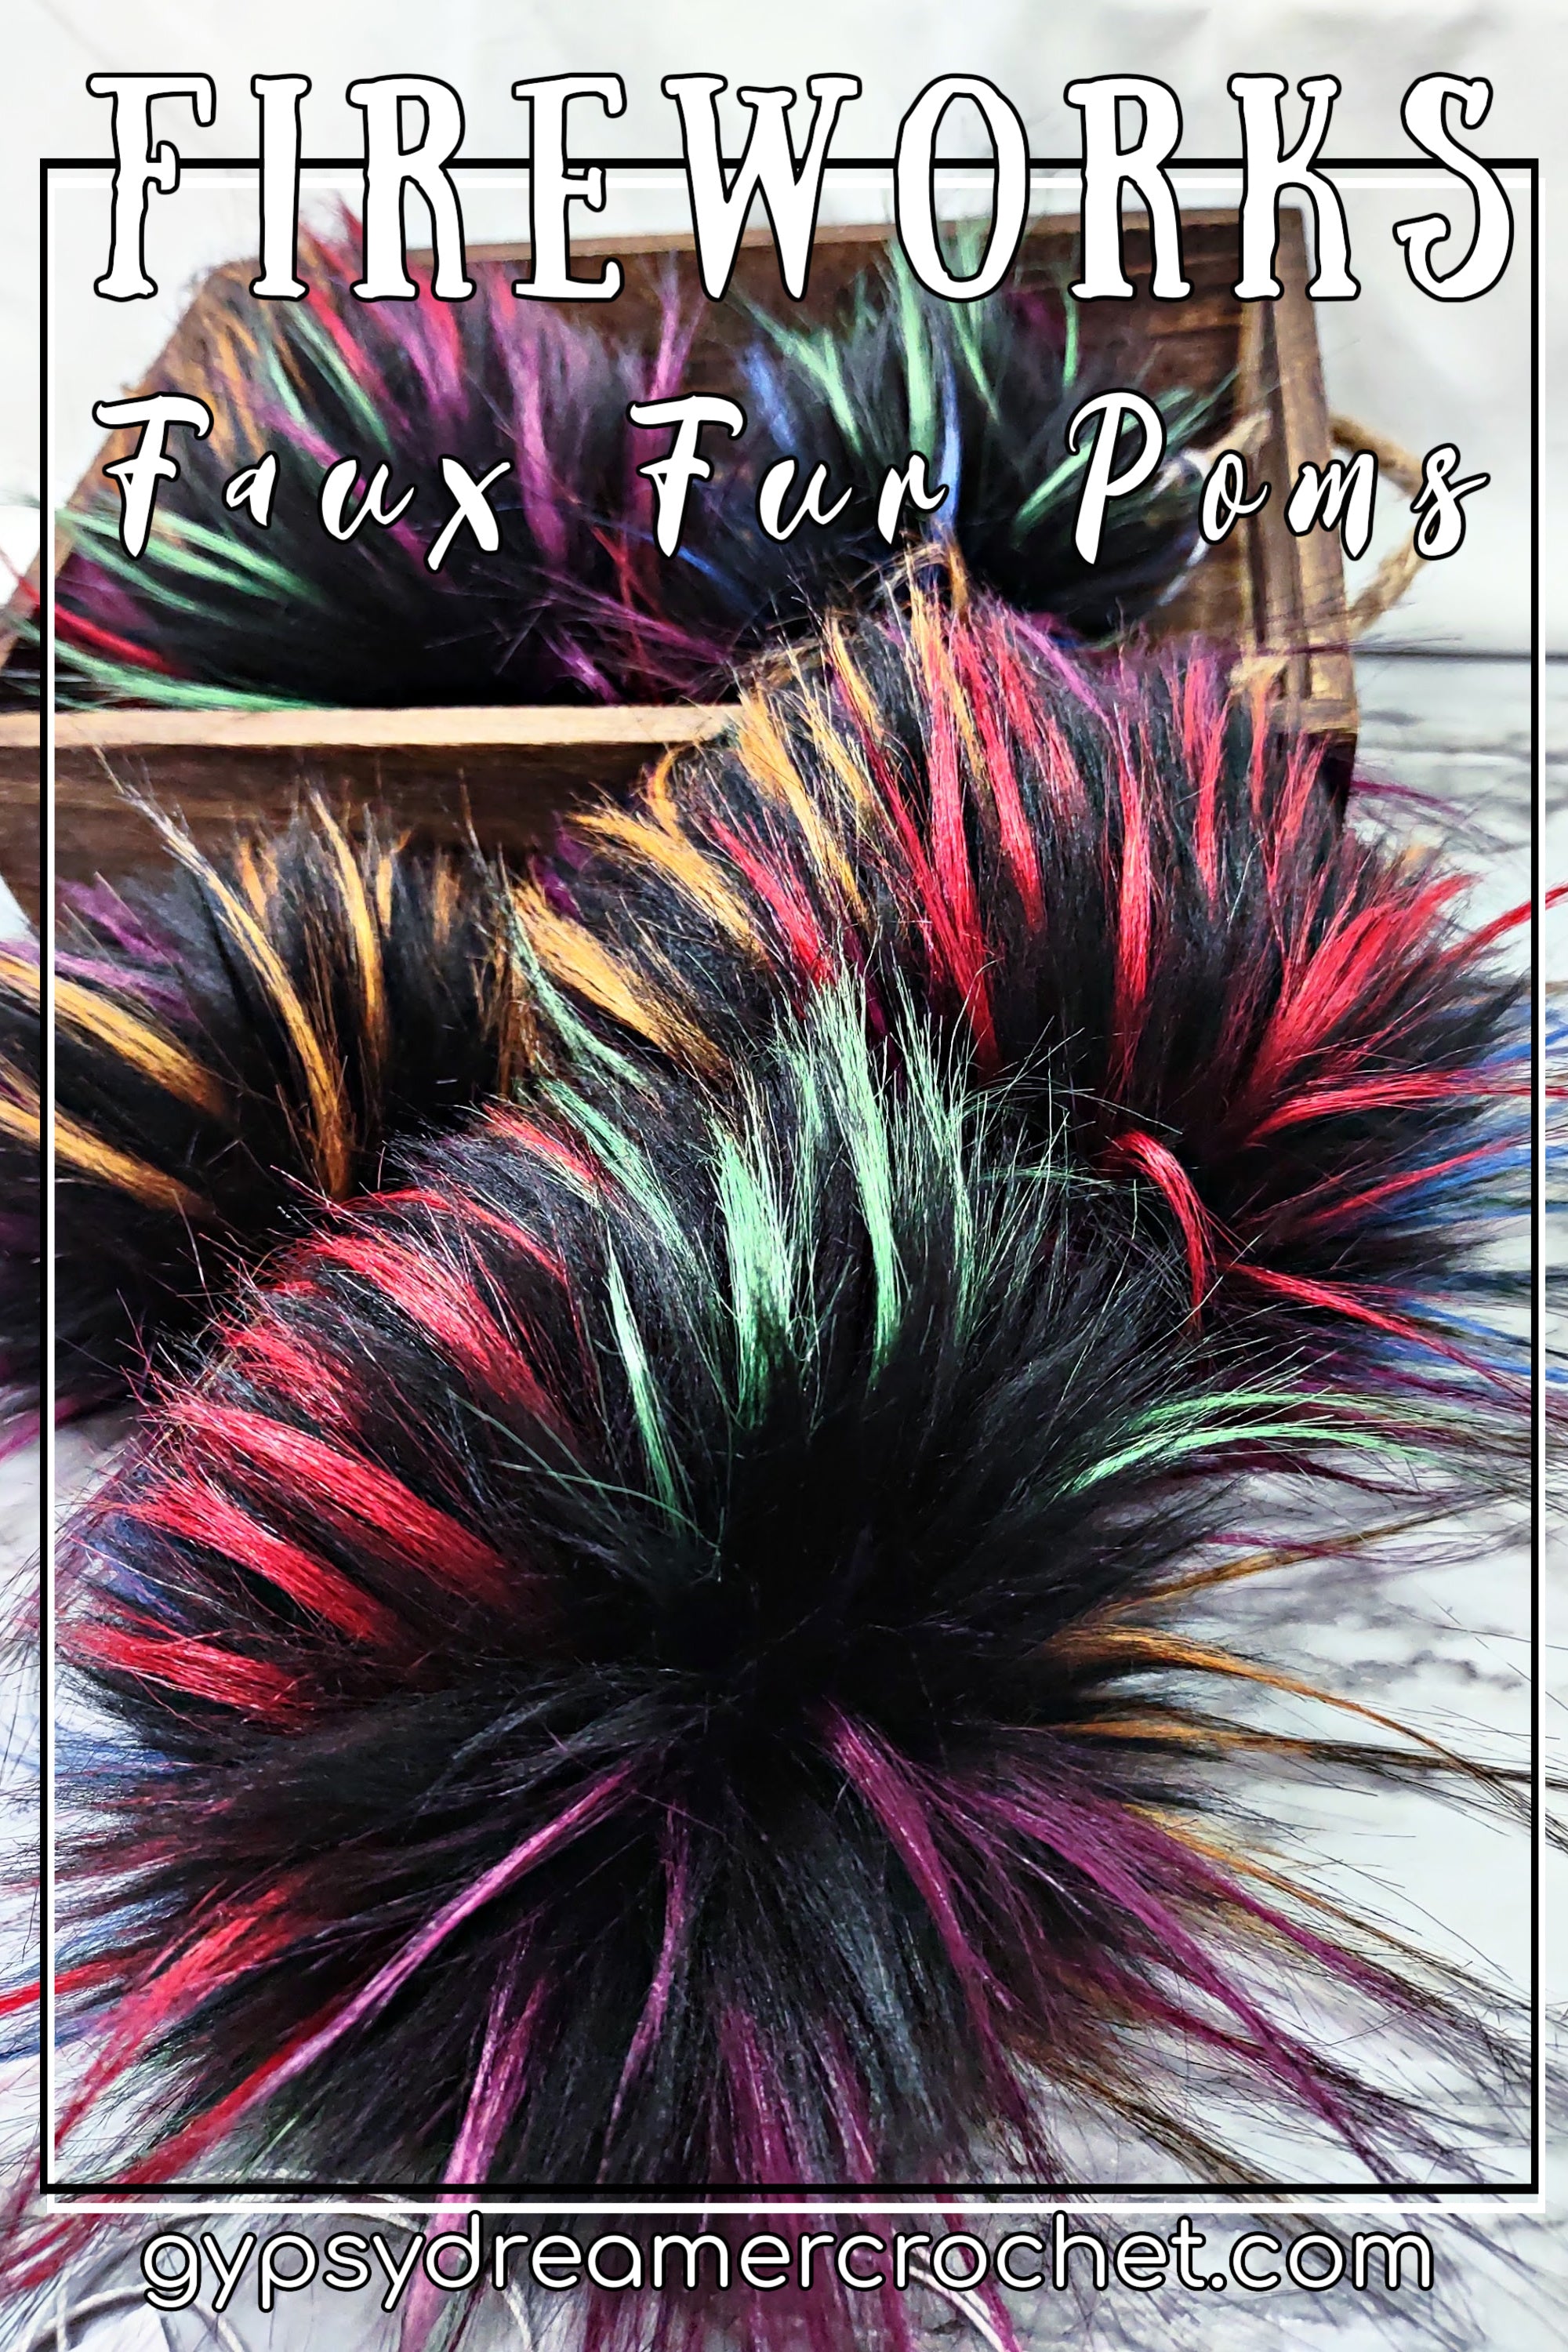 6 Pieces Rainbow Colors Faux Fur Pom Poms Snap Button Fluffy